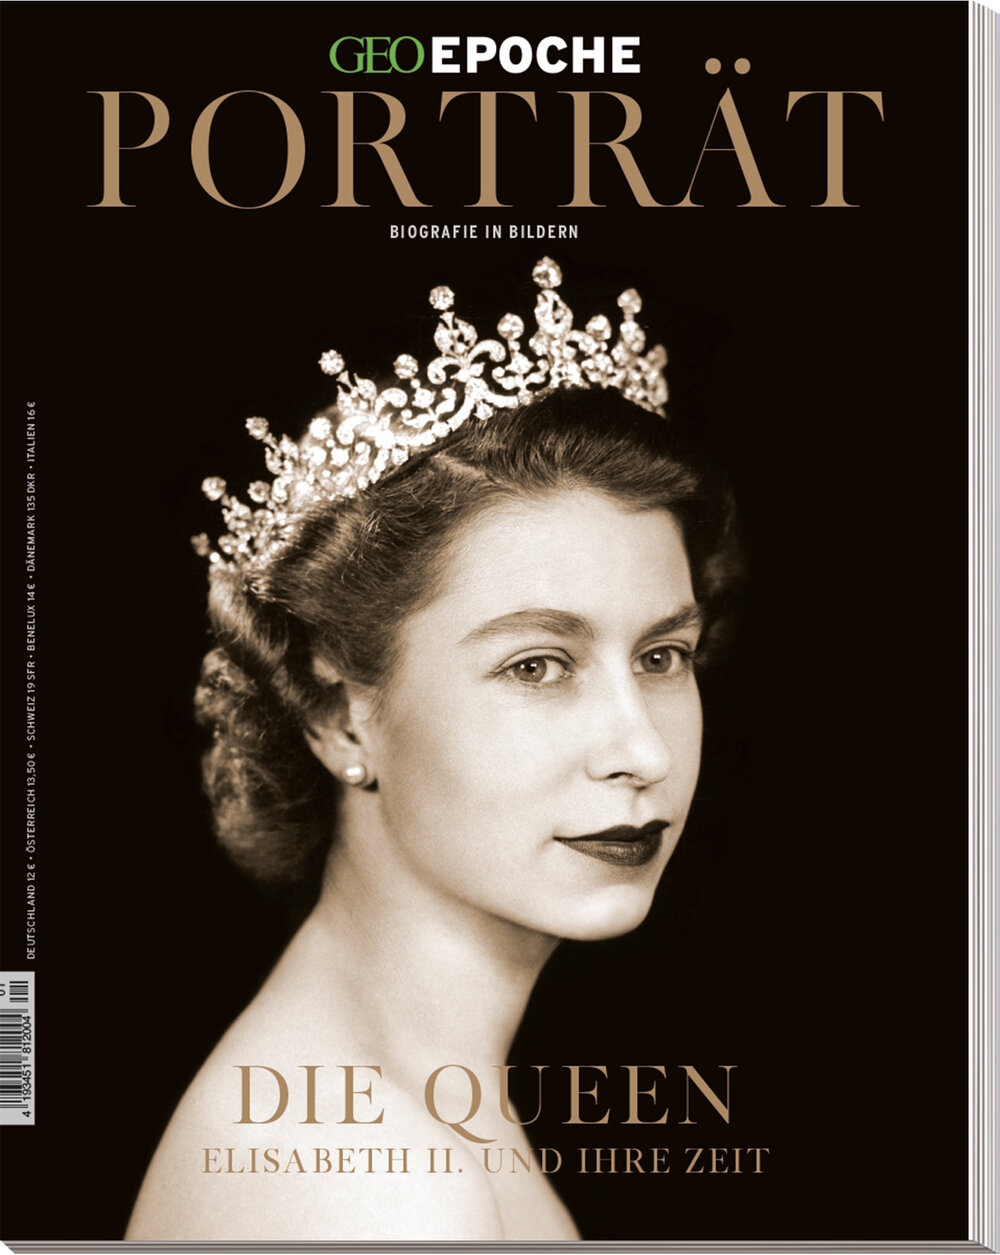 GEO EPOCHE-Porträt „Die Queen“